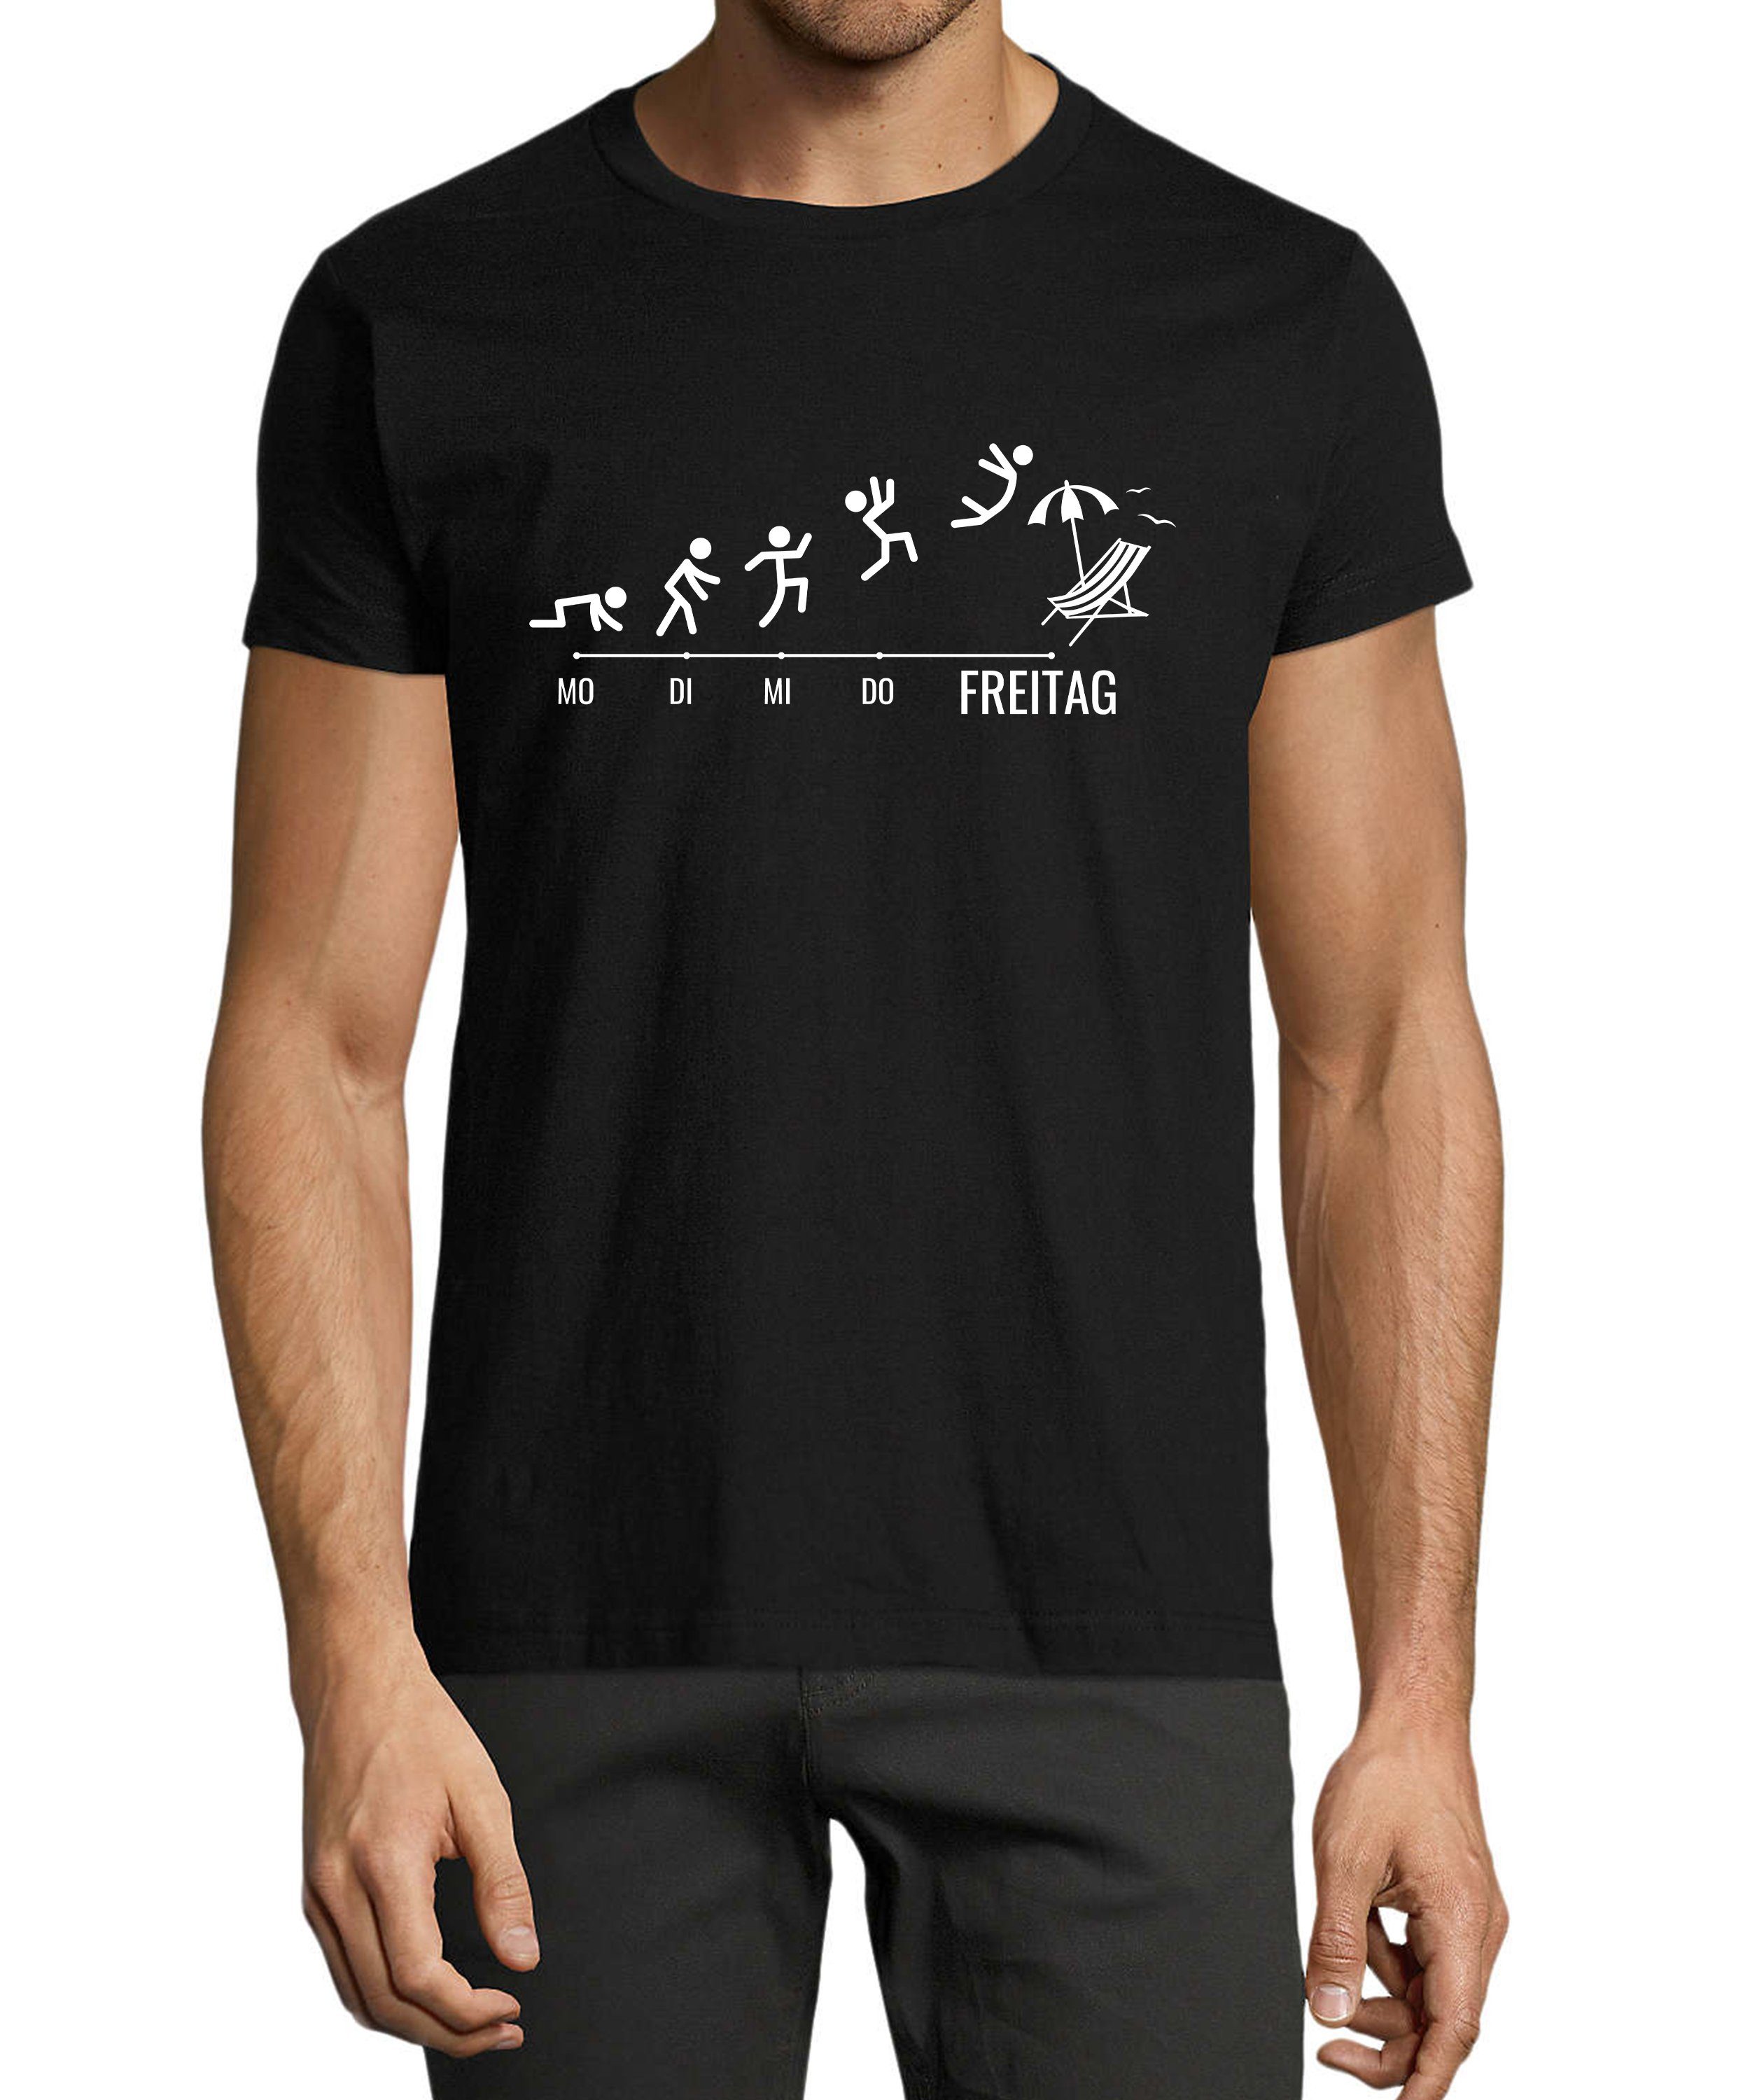 MyDesign24 T-Shirt Herren Fun Print mit schwarz Fit, Shirt Strichmännchen mit Regular Wochentage Aufdruck - Baumwollshirt i309